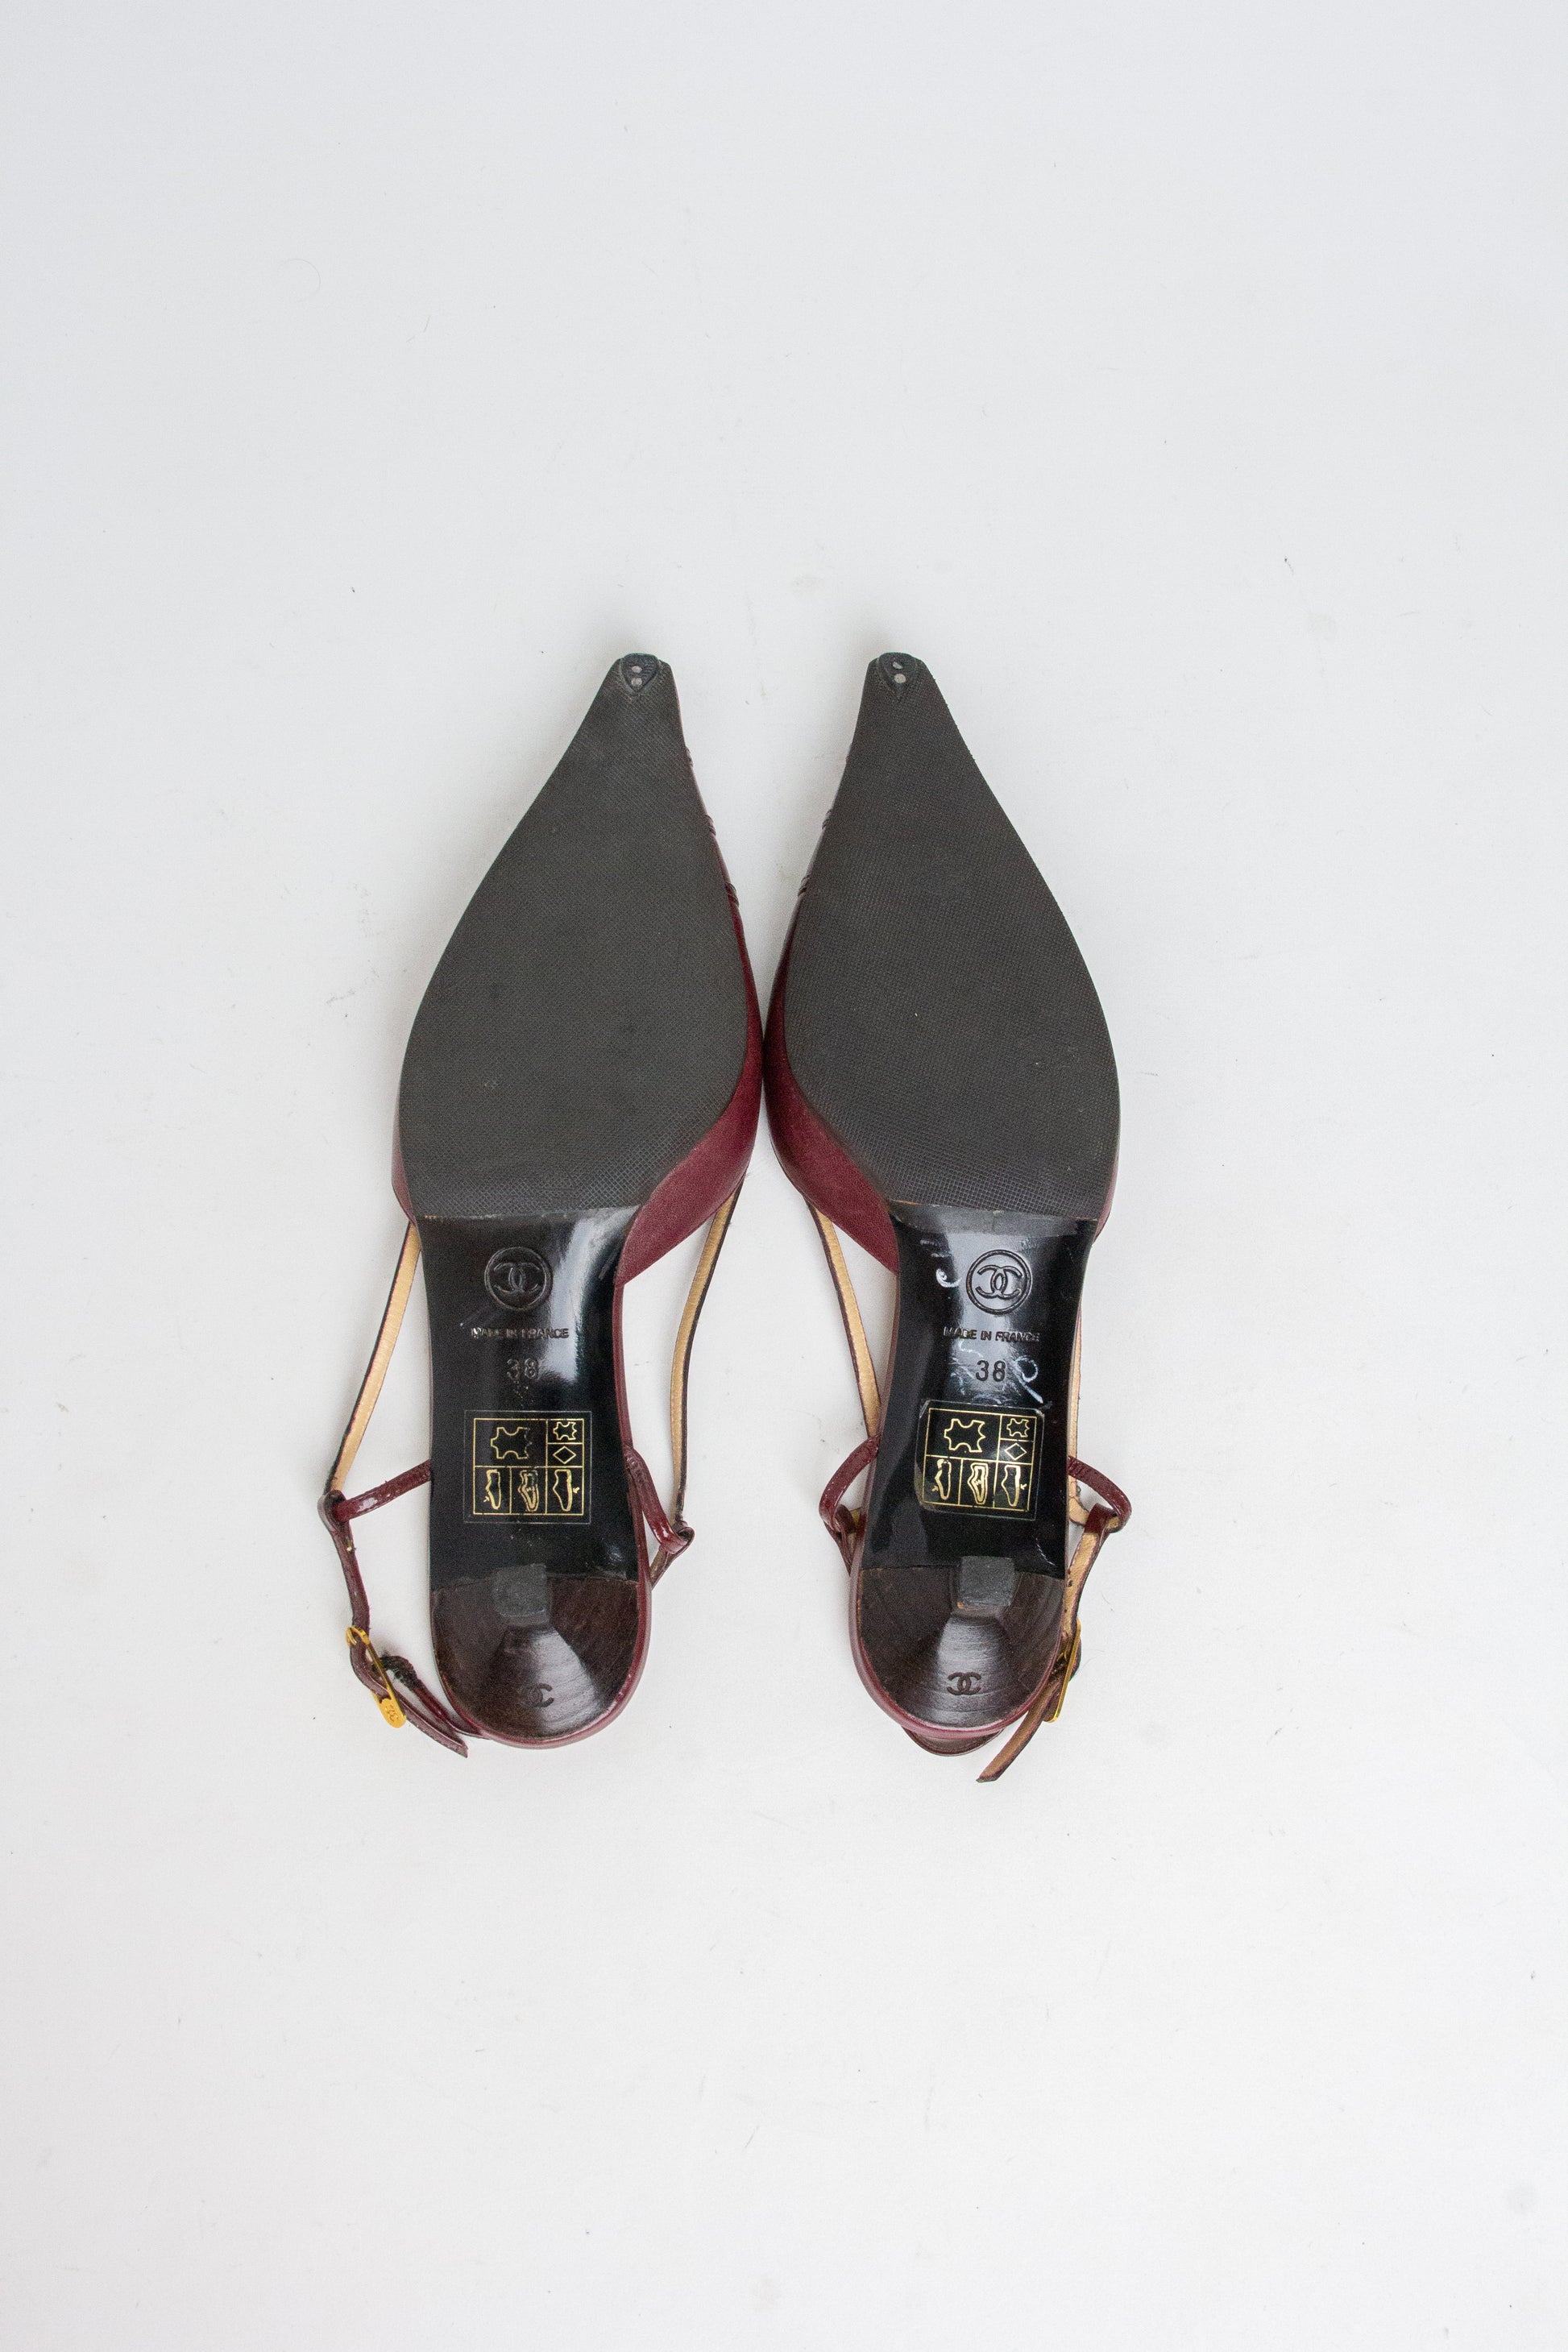 Chanel Vintage Burgundy Slingback Kitten Heels (FR 38) – NÍKU VINTAGE